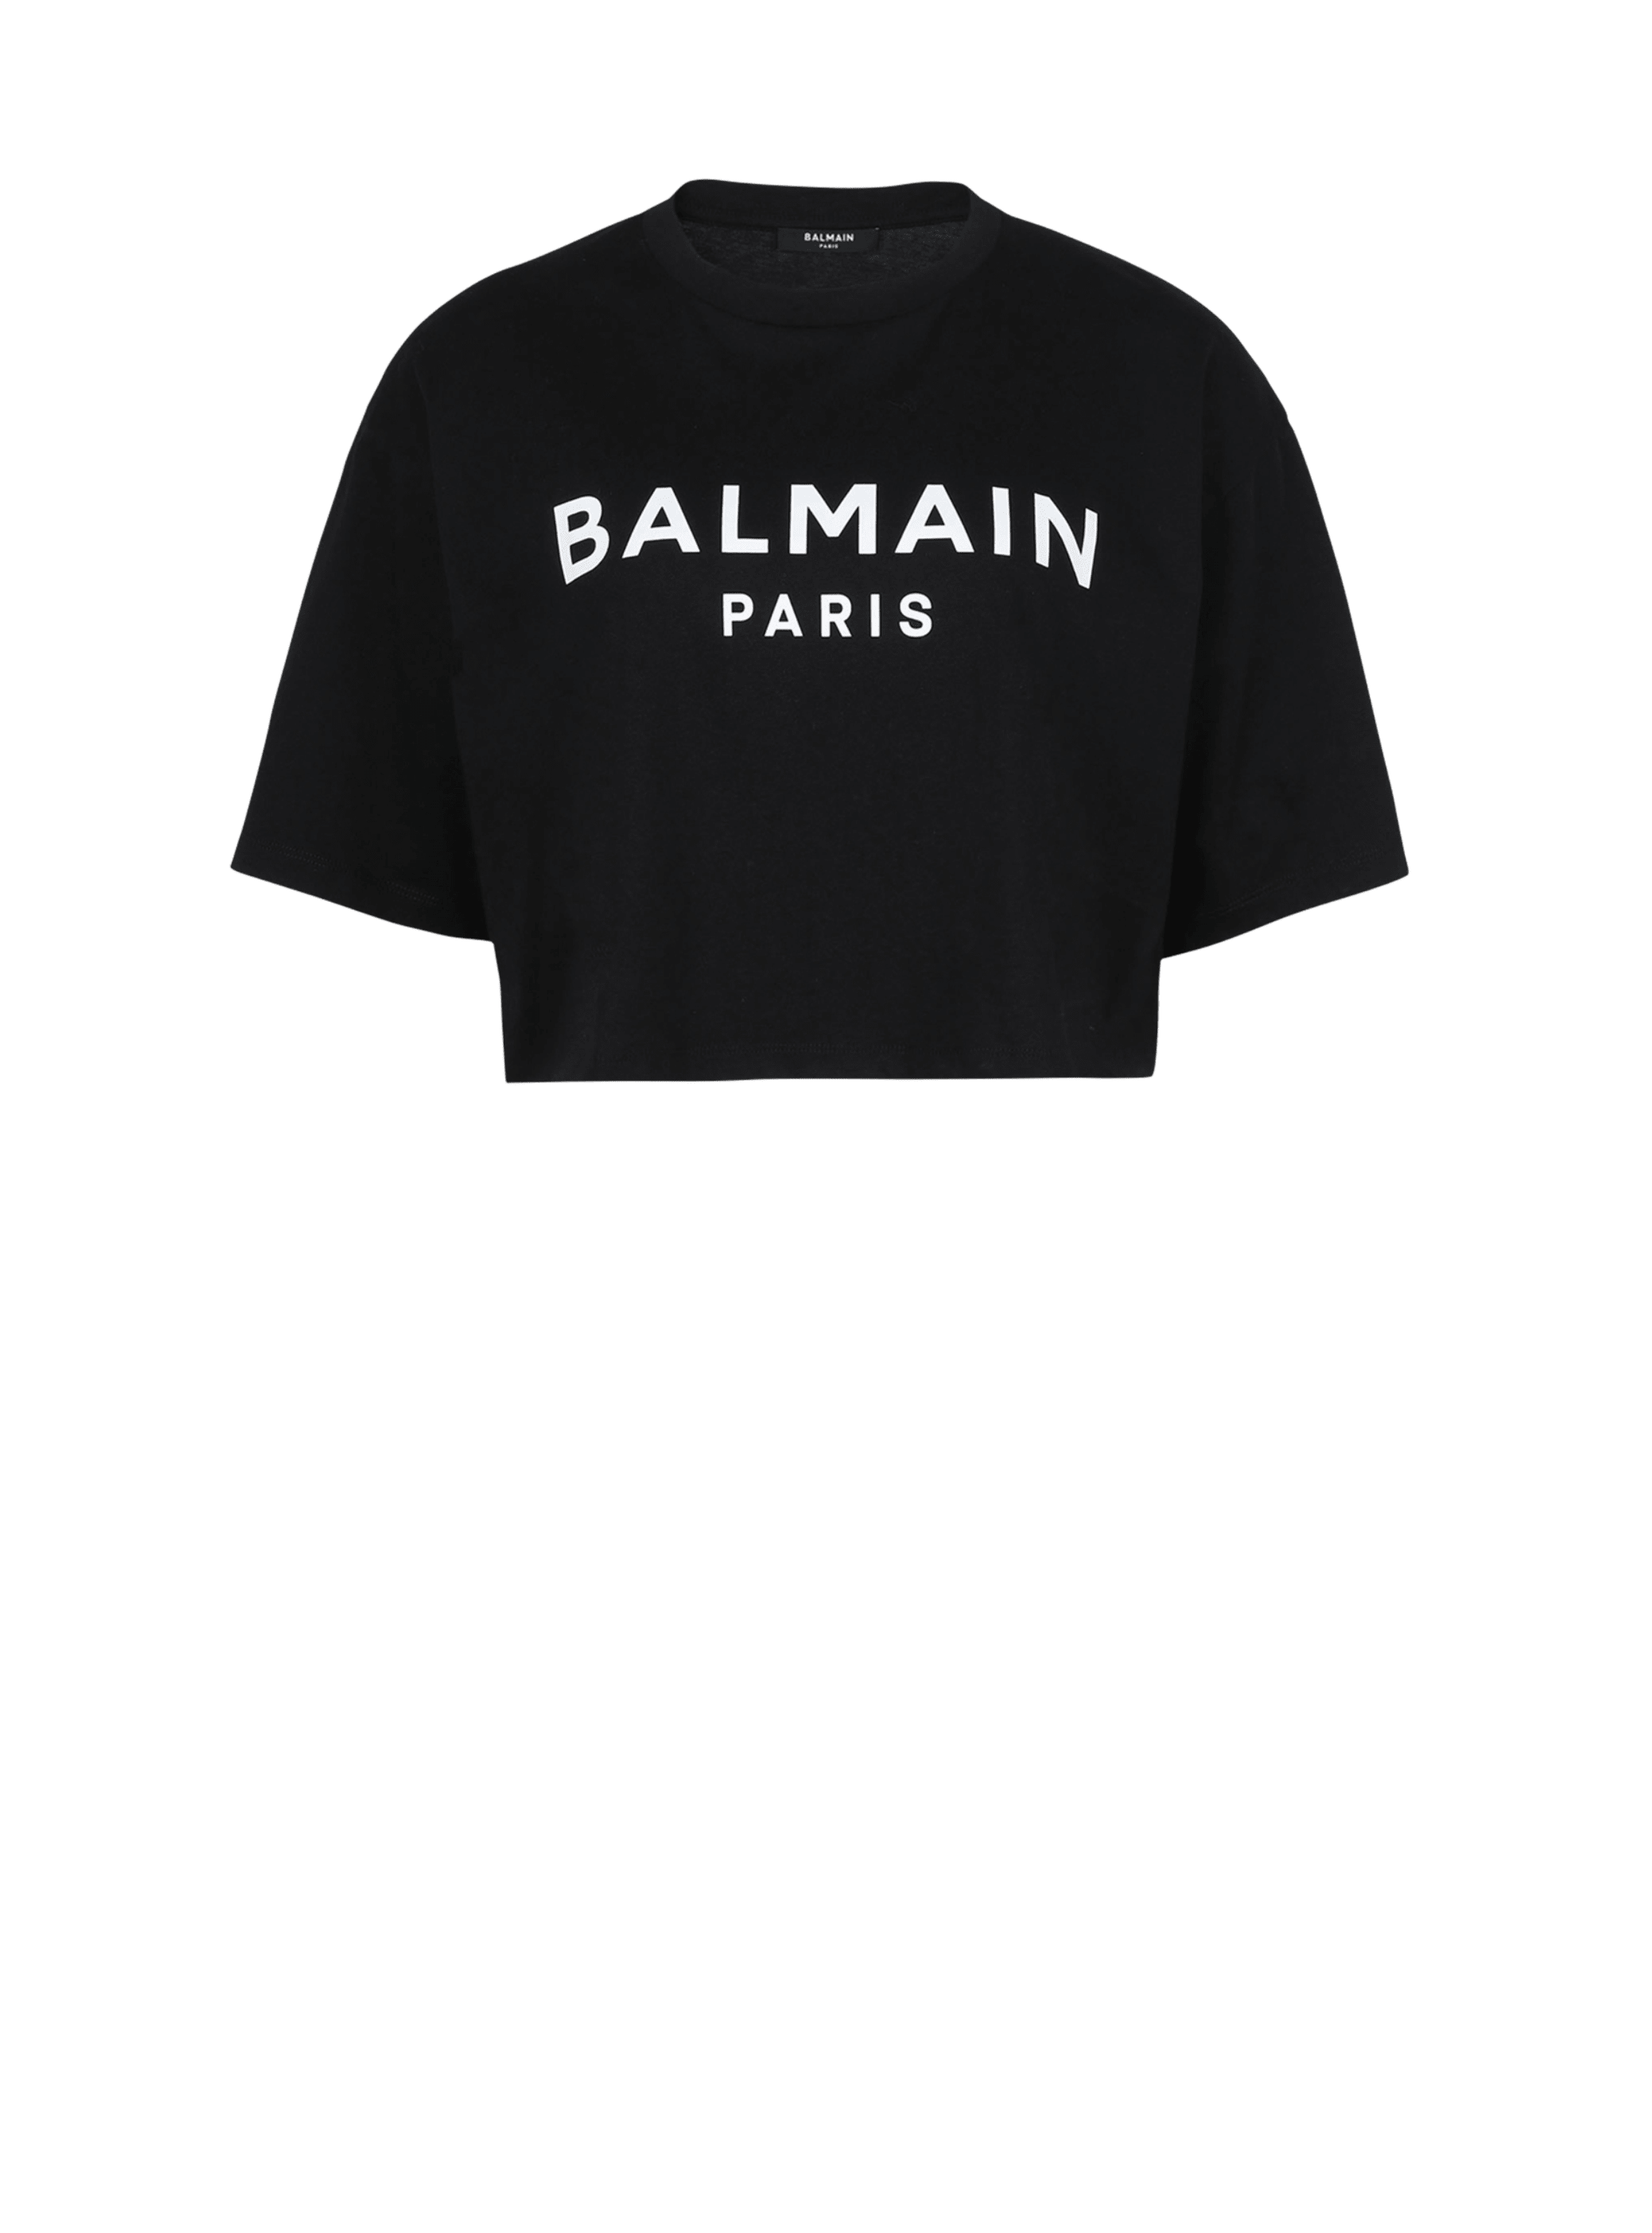 Kurzes T-Shirt aus Öko-Baumwolle mit aufgedrucktem Balmain-Logo, schwarz, hi-res